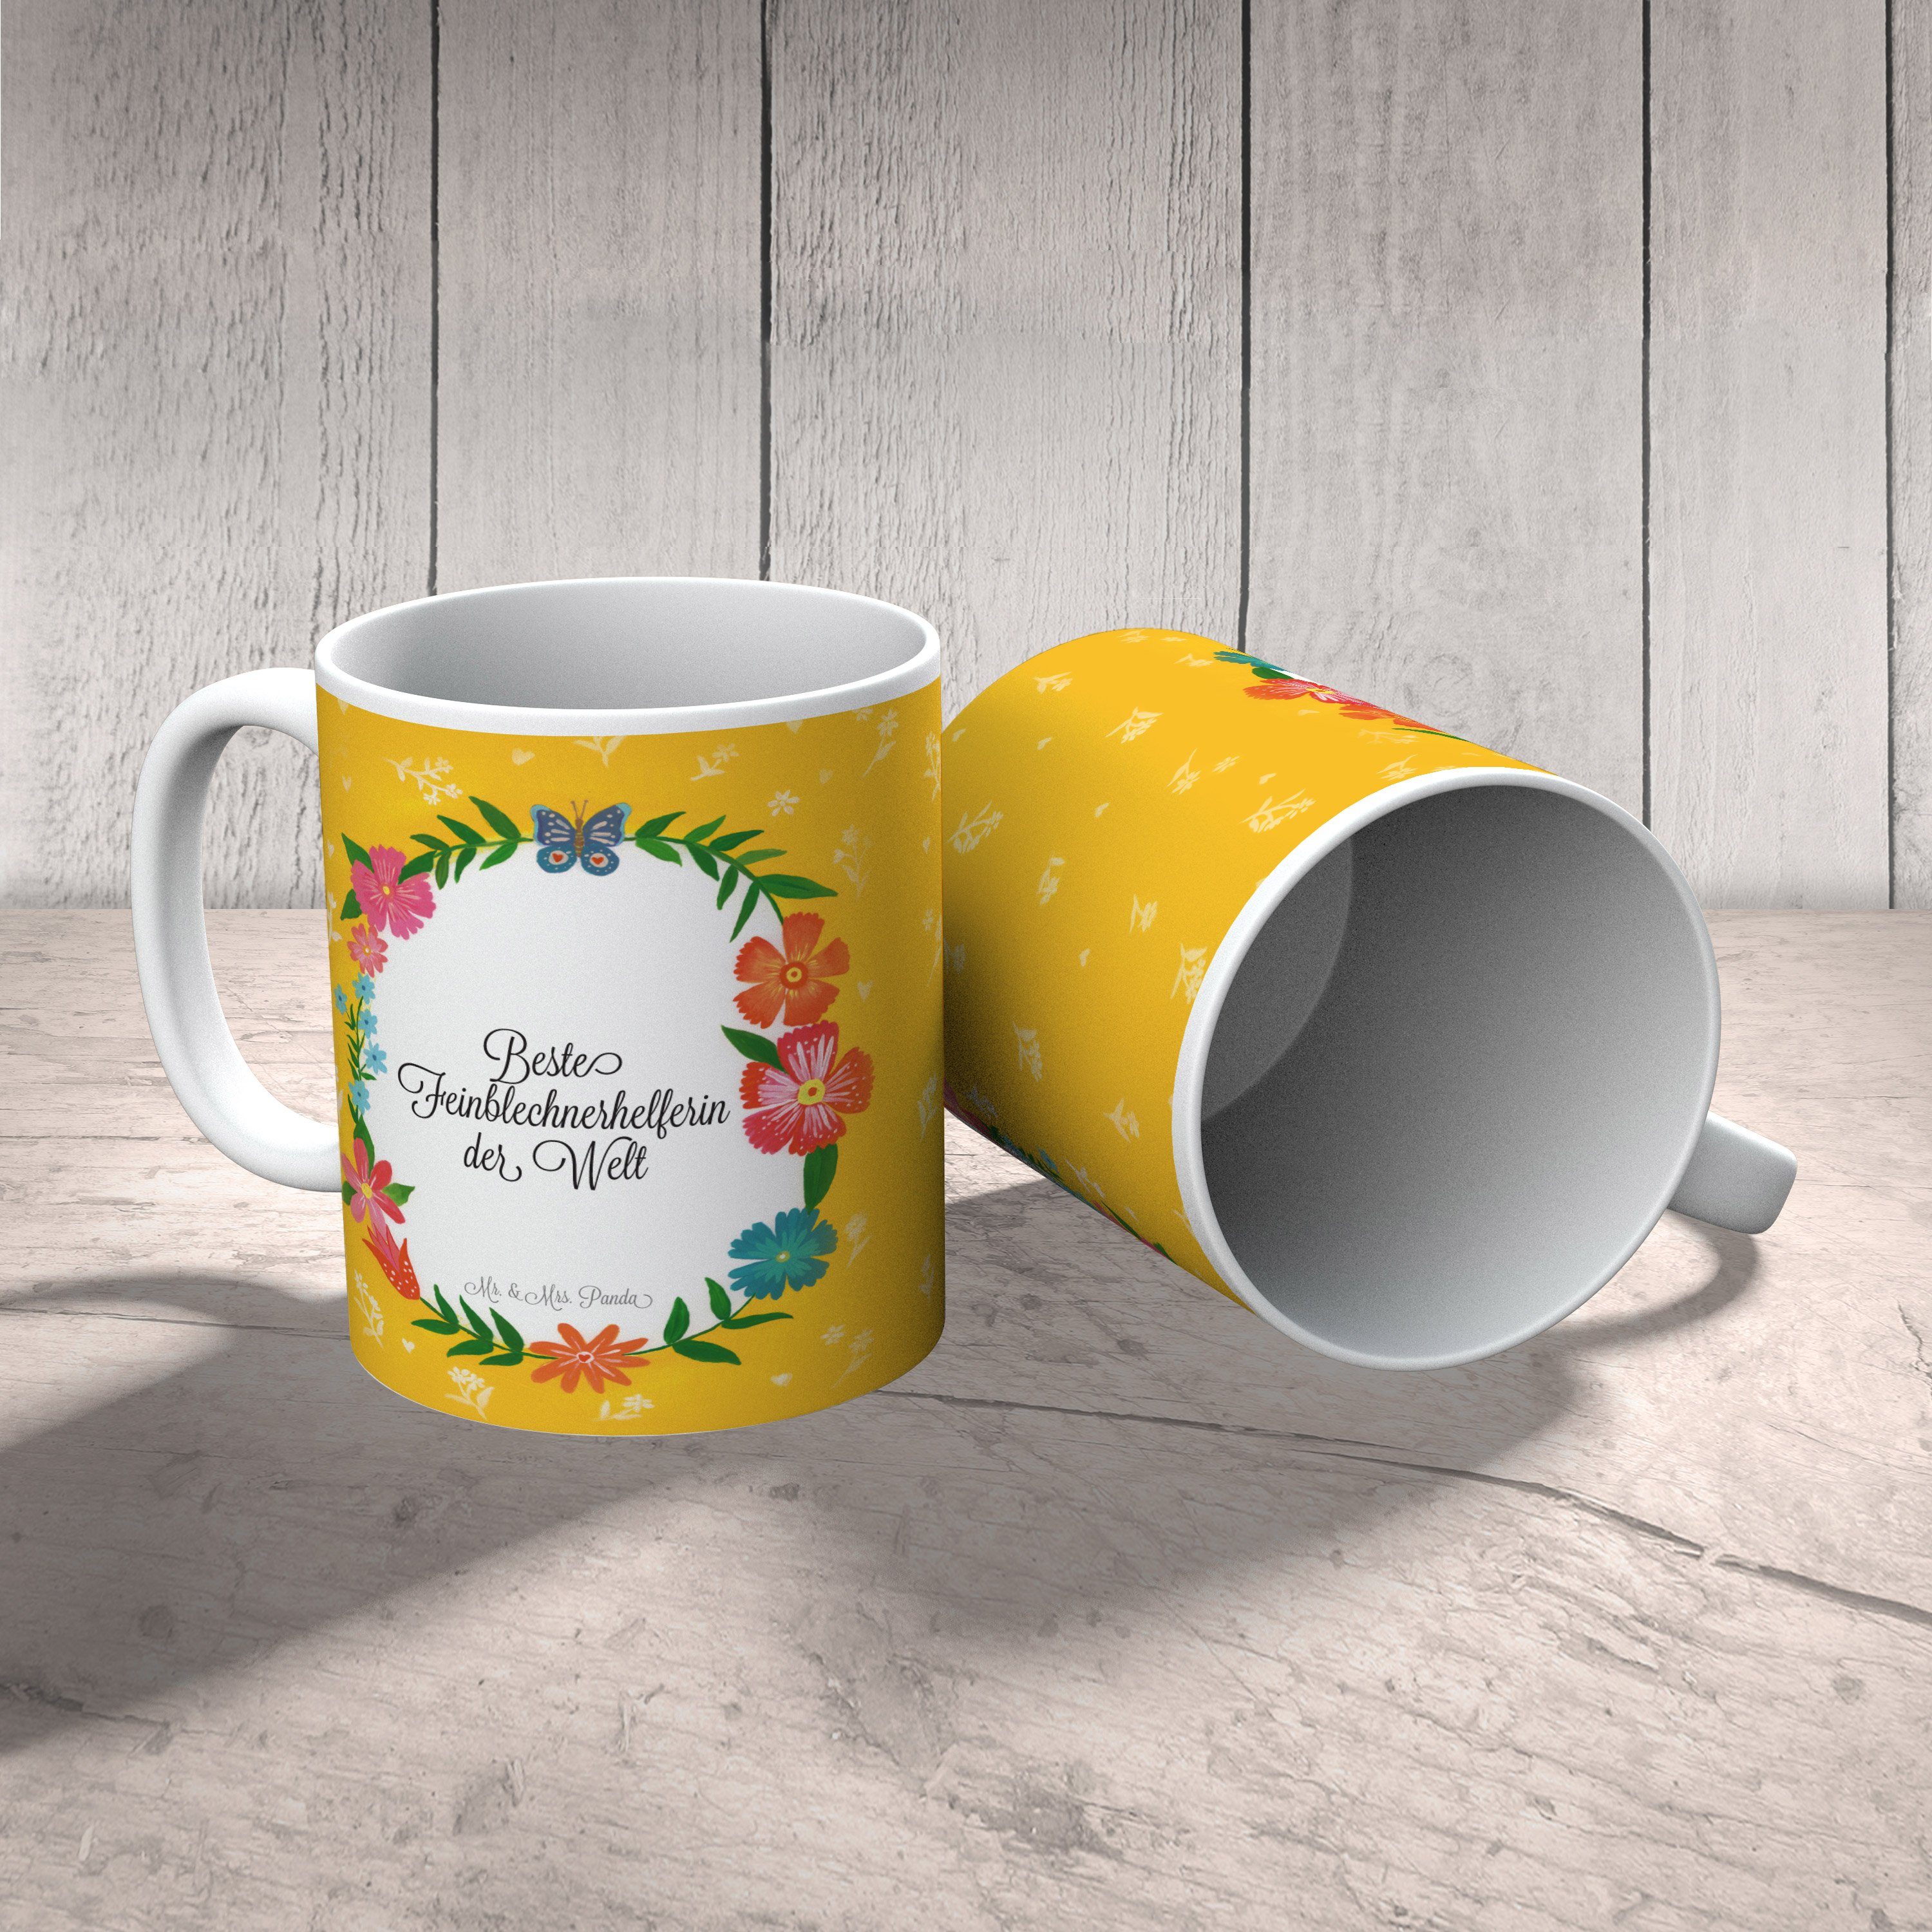 Mr. & Mrs. Panda Tasse Geschenk, Geschenk Sprüche, Keramik - Tasse Feinblechnerhelferin Tasse, Tasse